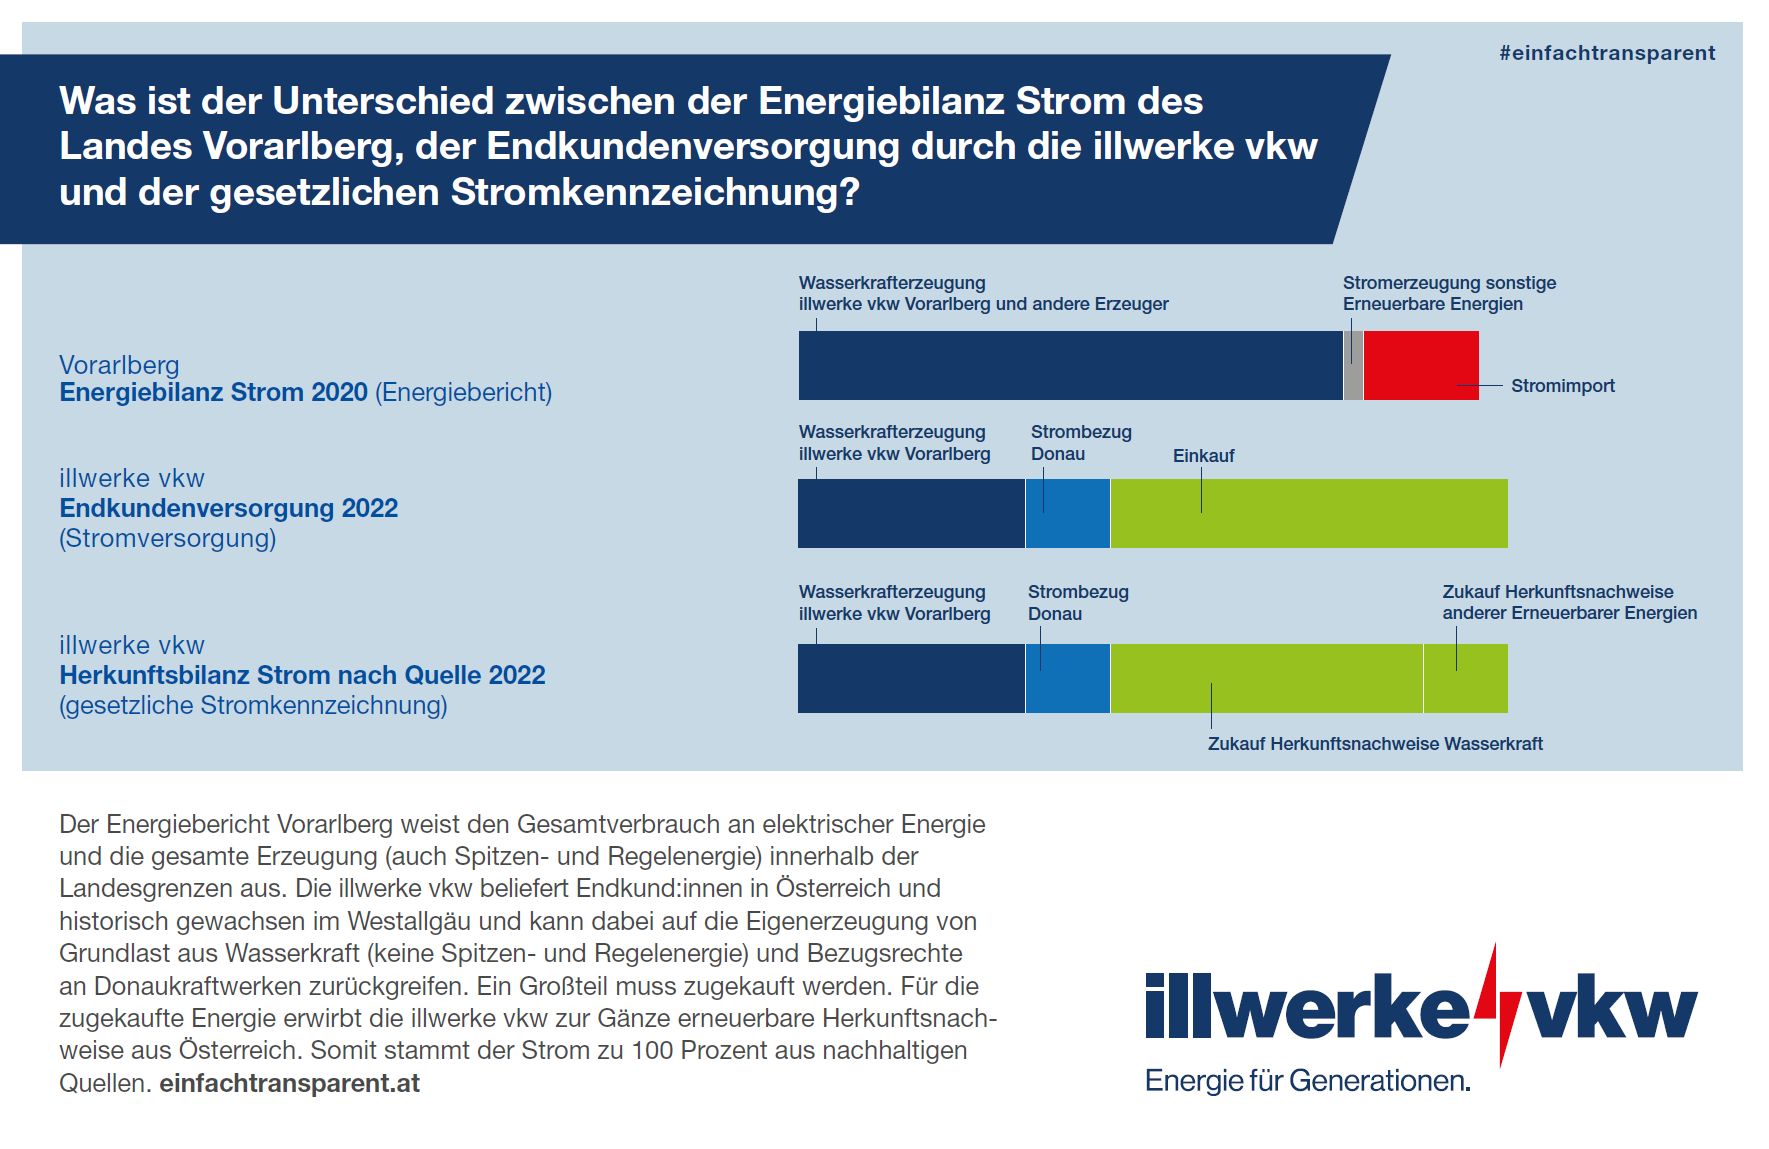 Energiebilanz des Landes Vorarlberg und die Stromherkunft der illwerke vkw